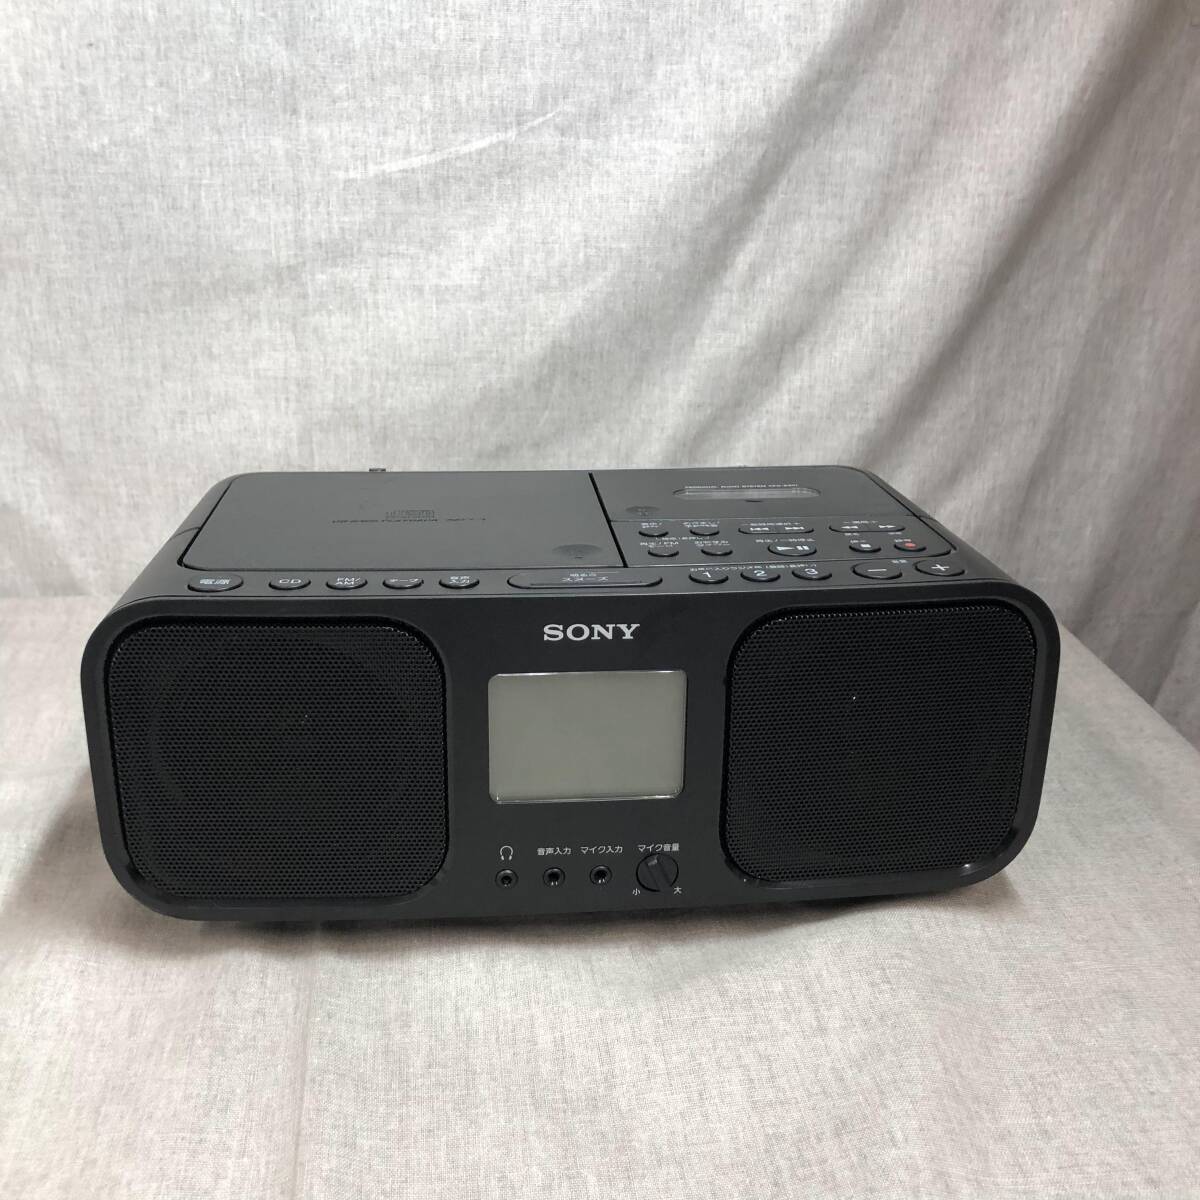 ソニー CDラジオカセットレコーダー CFD-S401 : FM/AM/ワイドFM対応 大型液晶/カラオケ機能搭載 電池駆動可能 ブラック